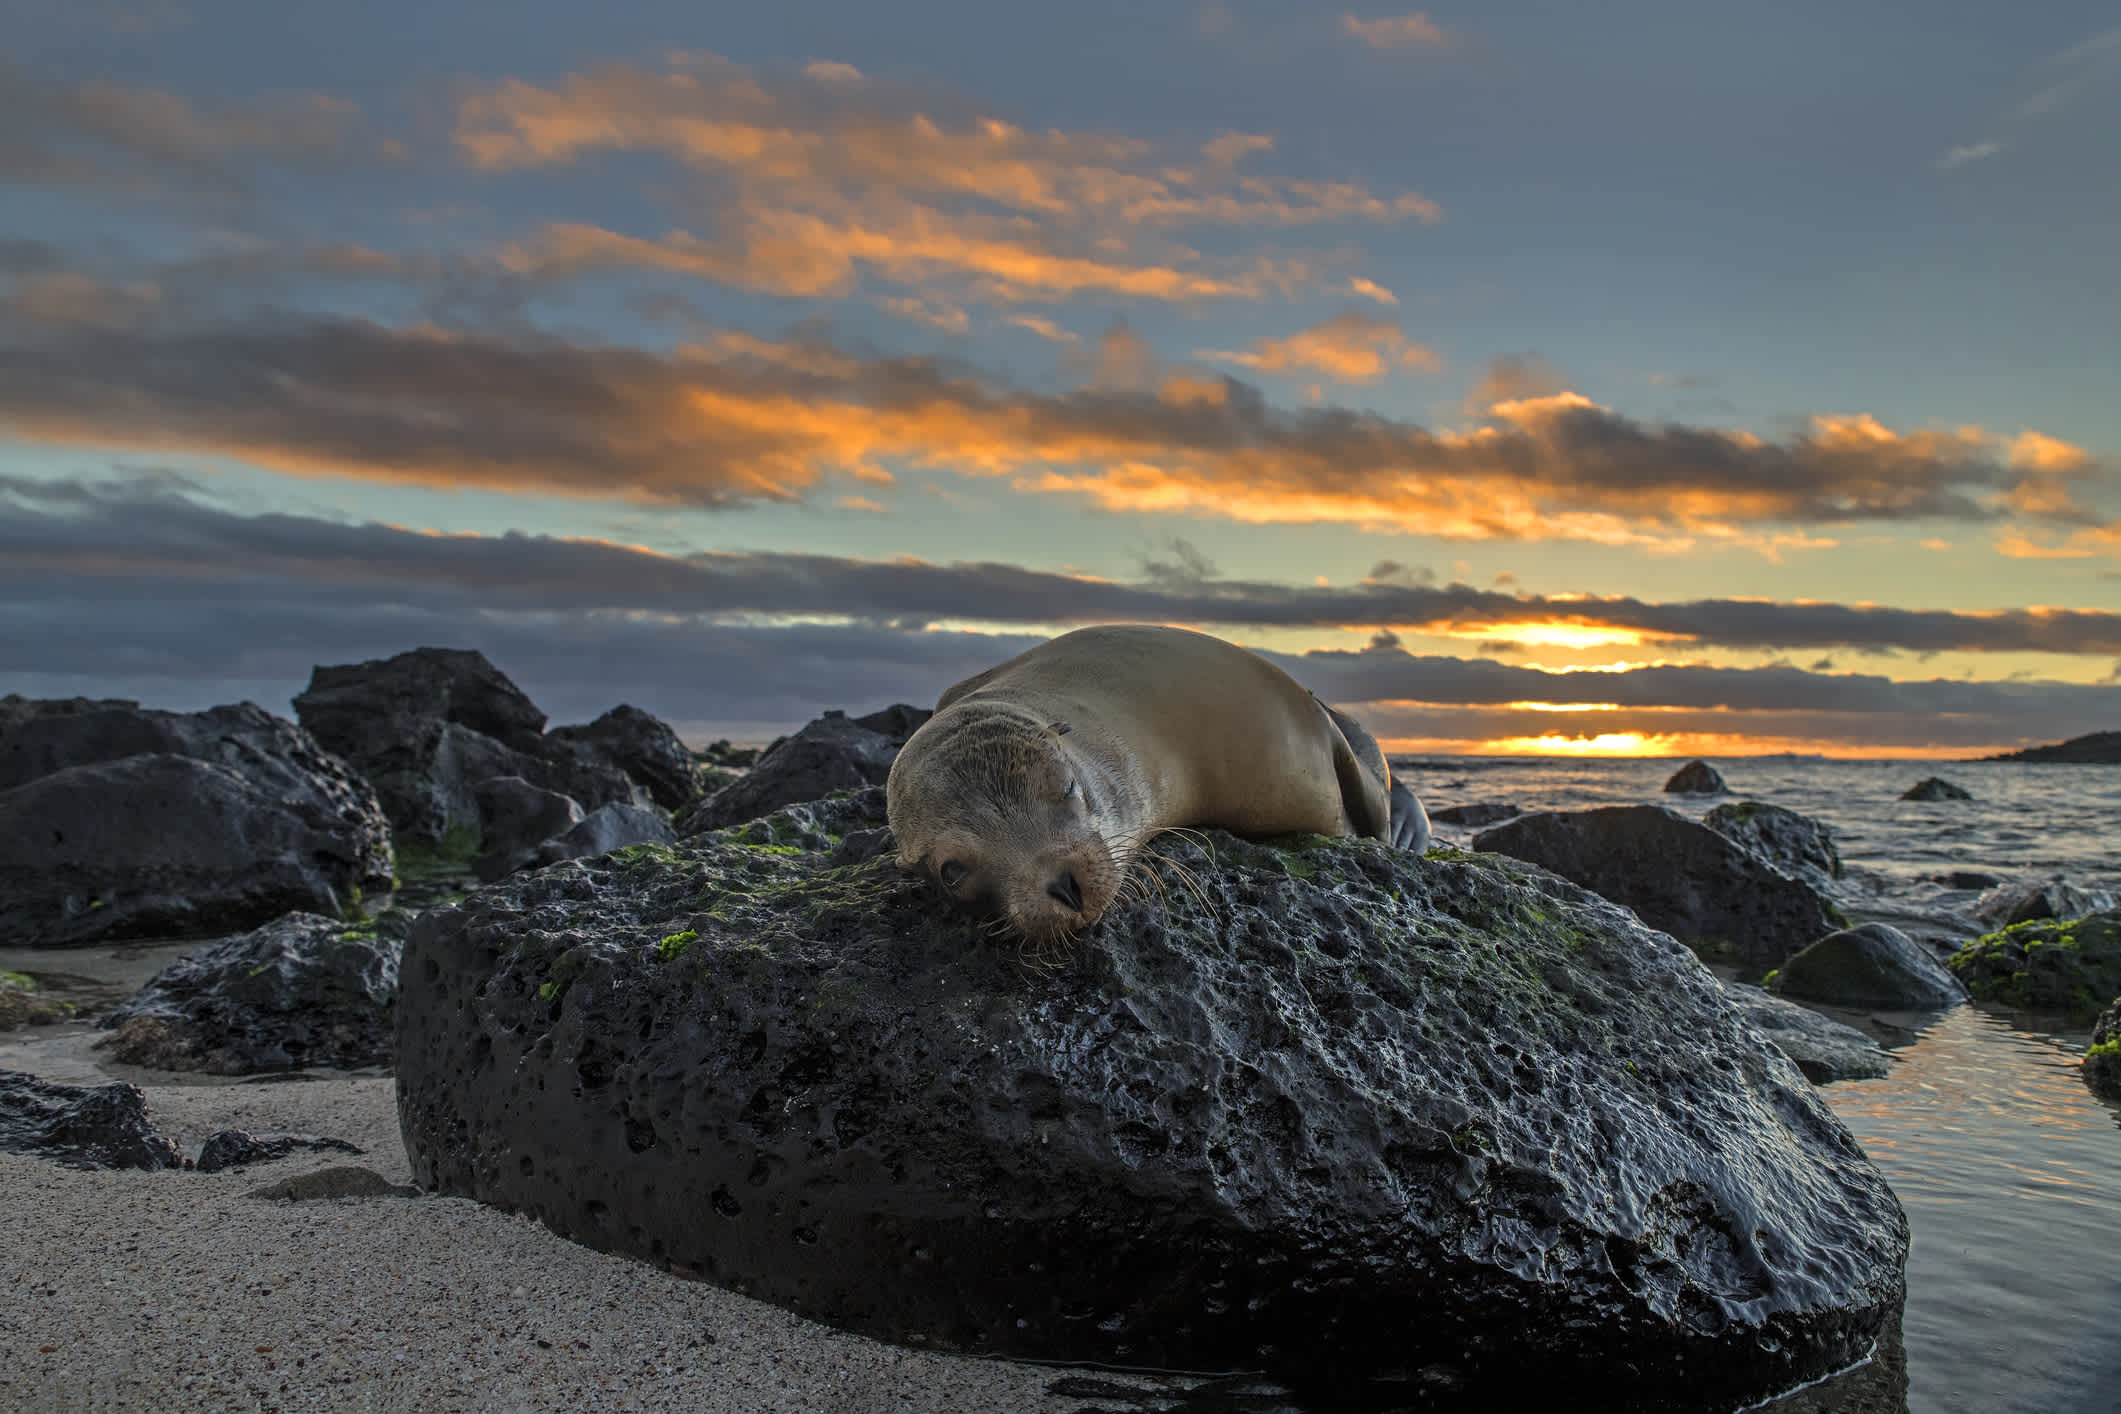 Lion de mer des Galapagos allongé sur un rocher au bord d'une plage au coucher du soleil, sur l'île de San Cristobal, îles Galapagos, Équateur.